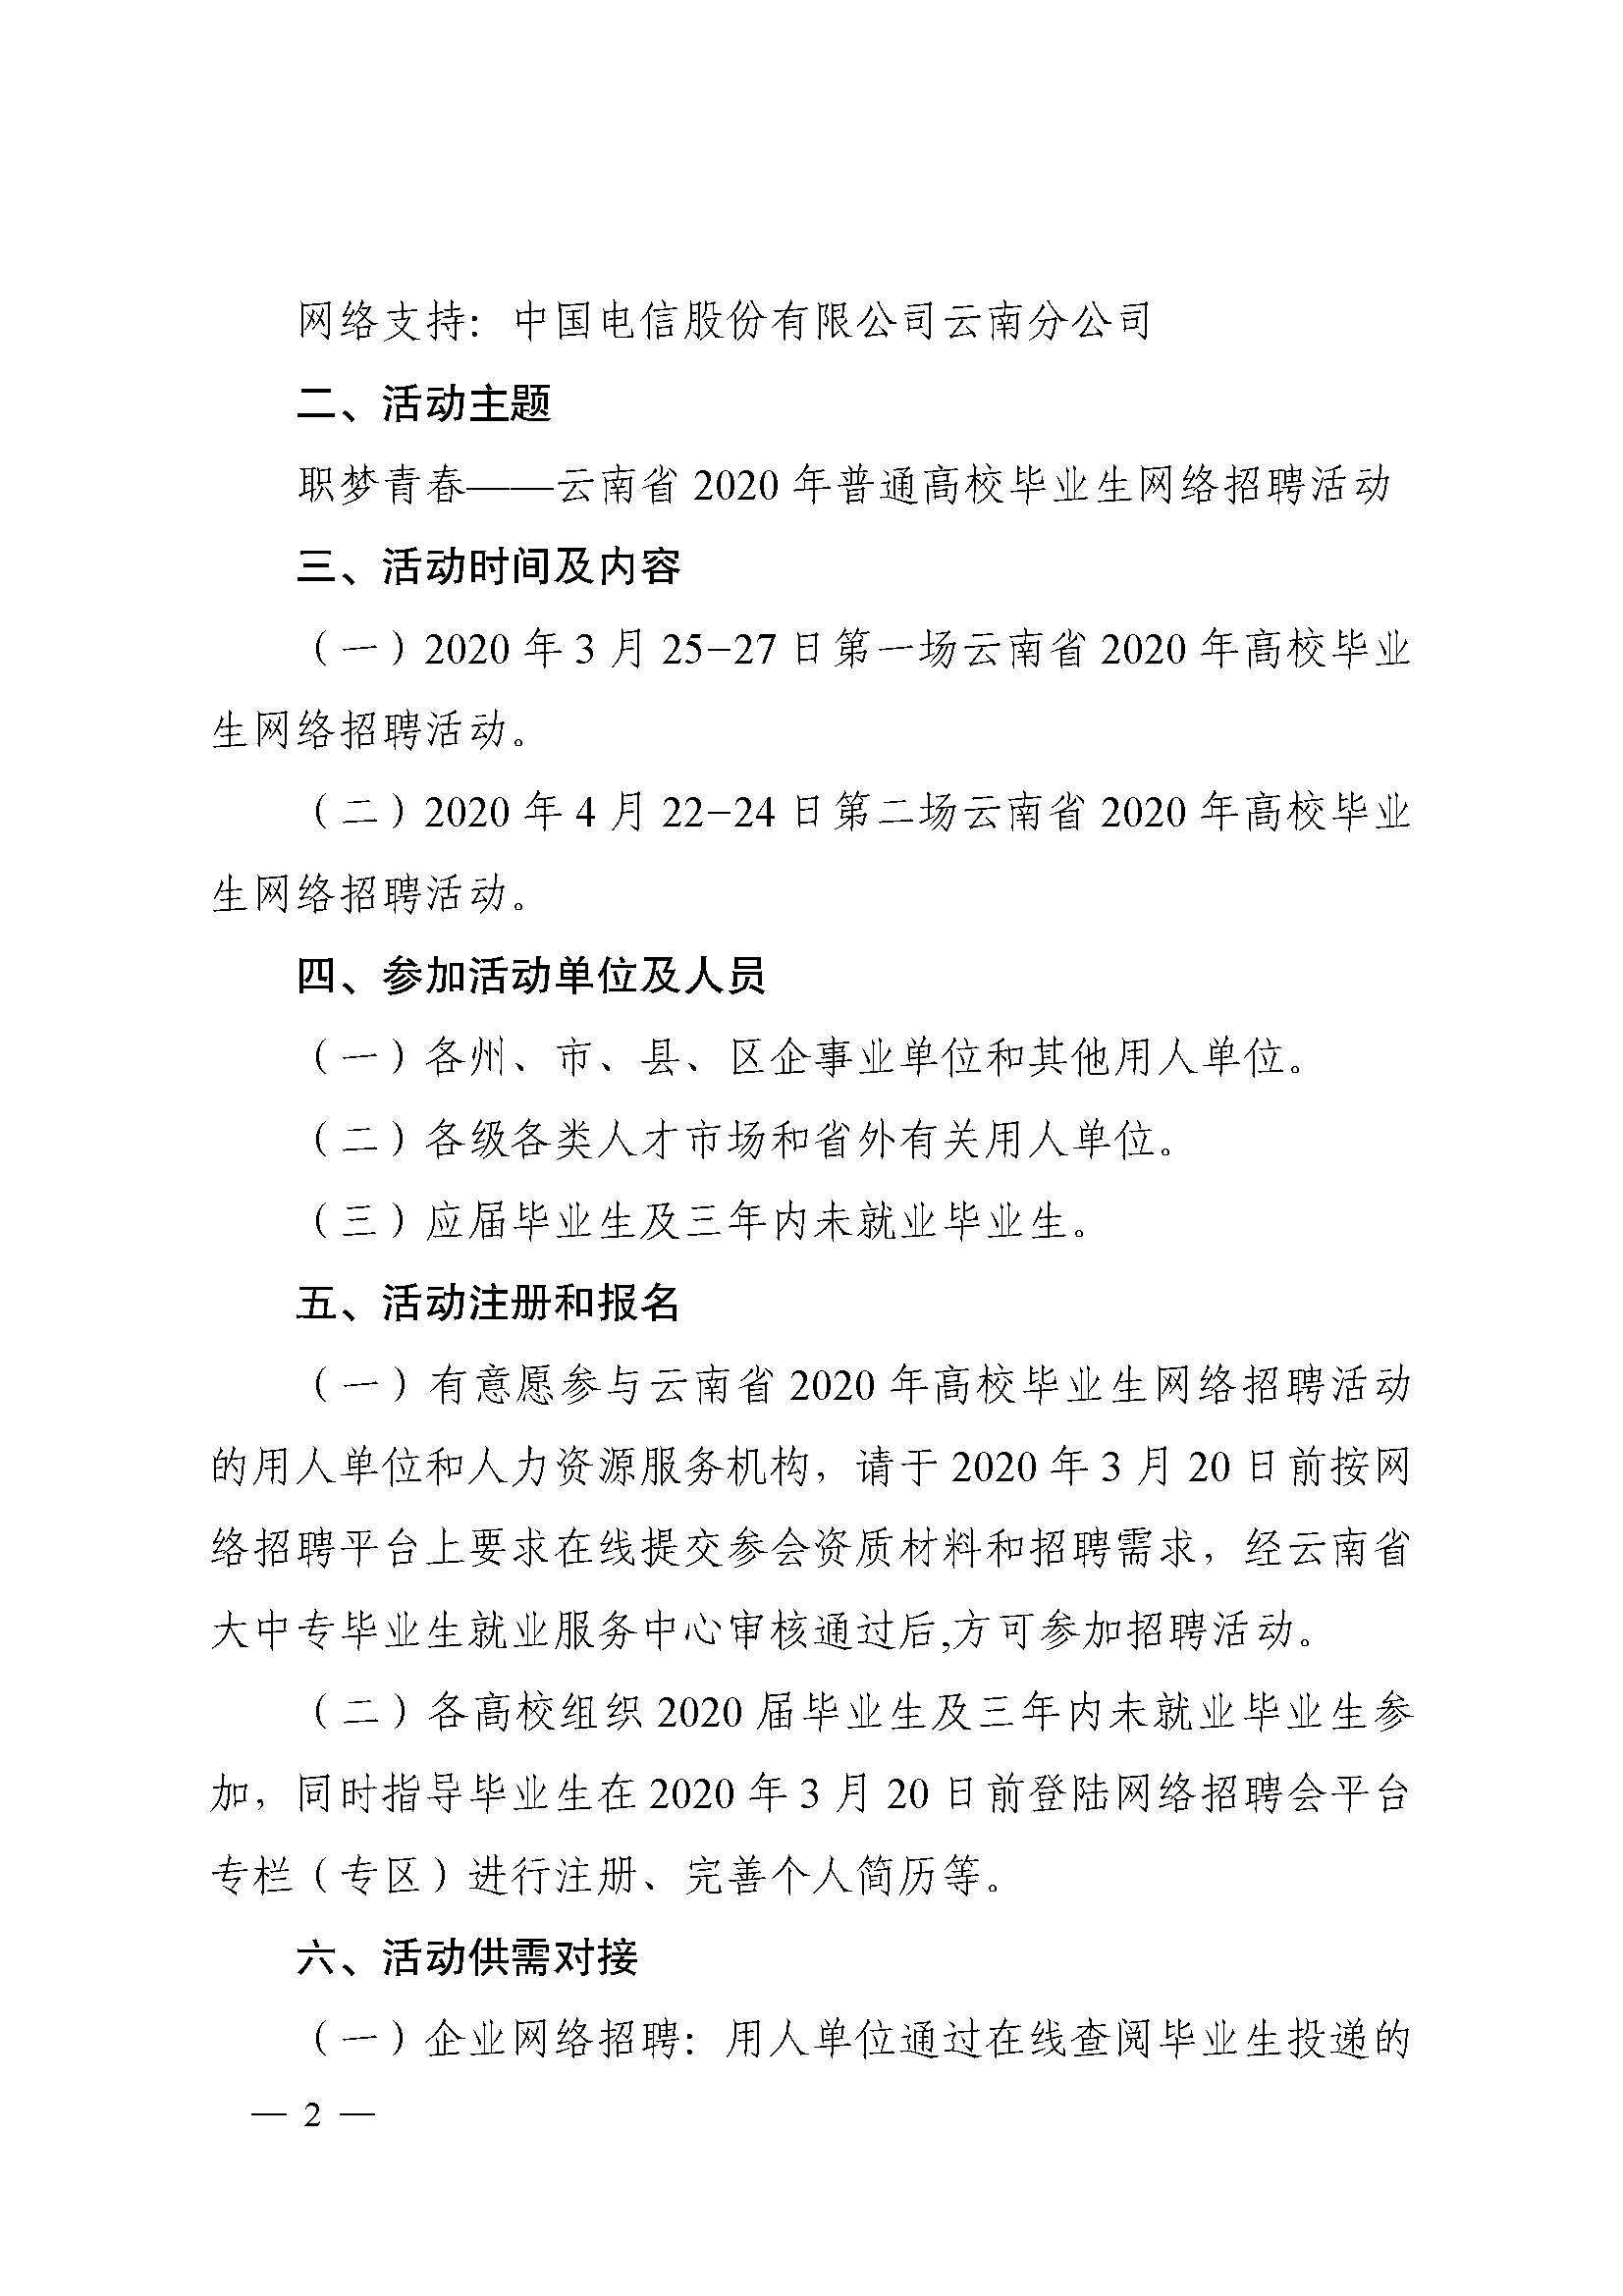 云南省教育厅关于举办云南省2020年高校毕业生大型网络招聘活动的通知(1)-已解锁_页面_2.jpg